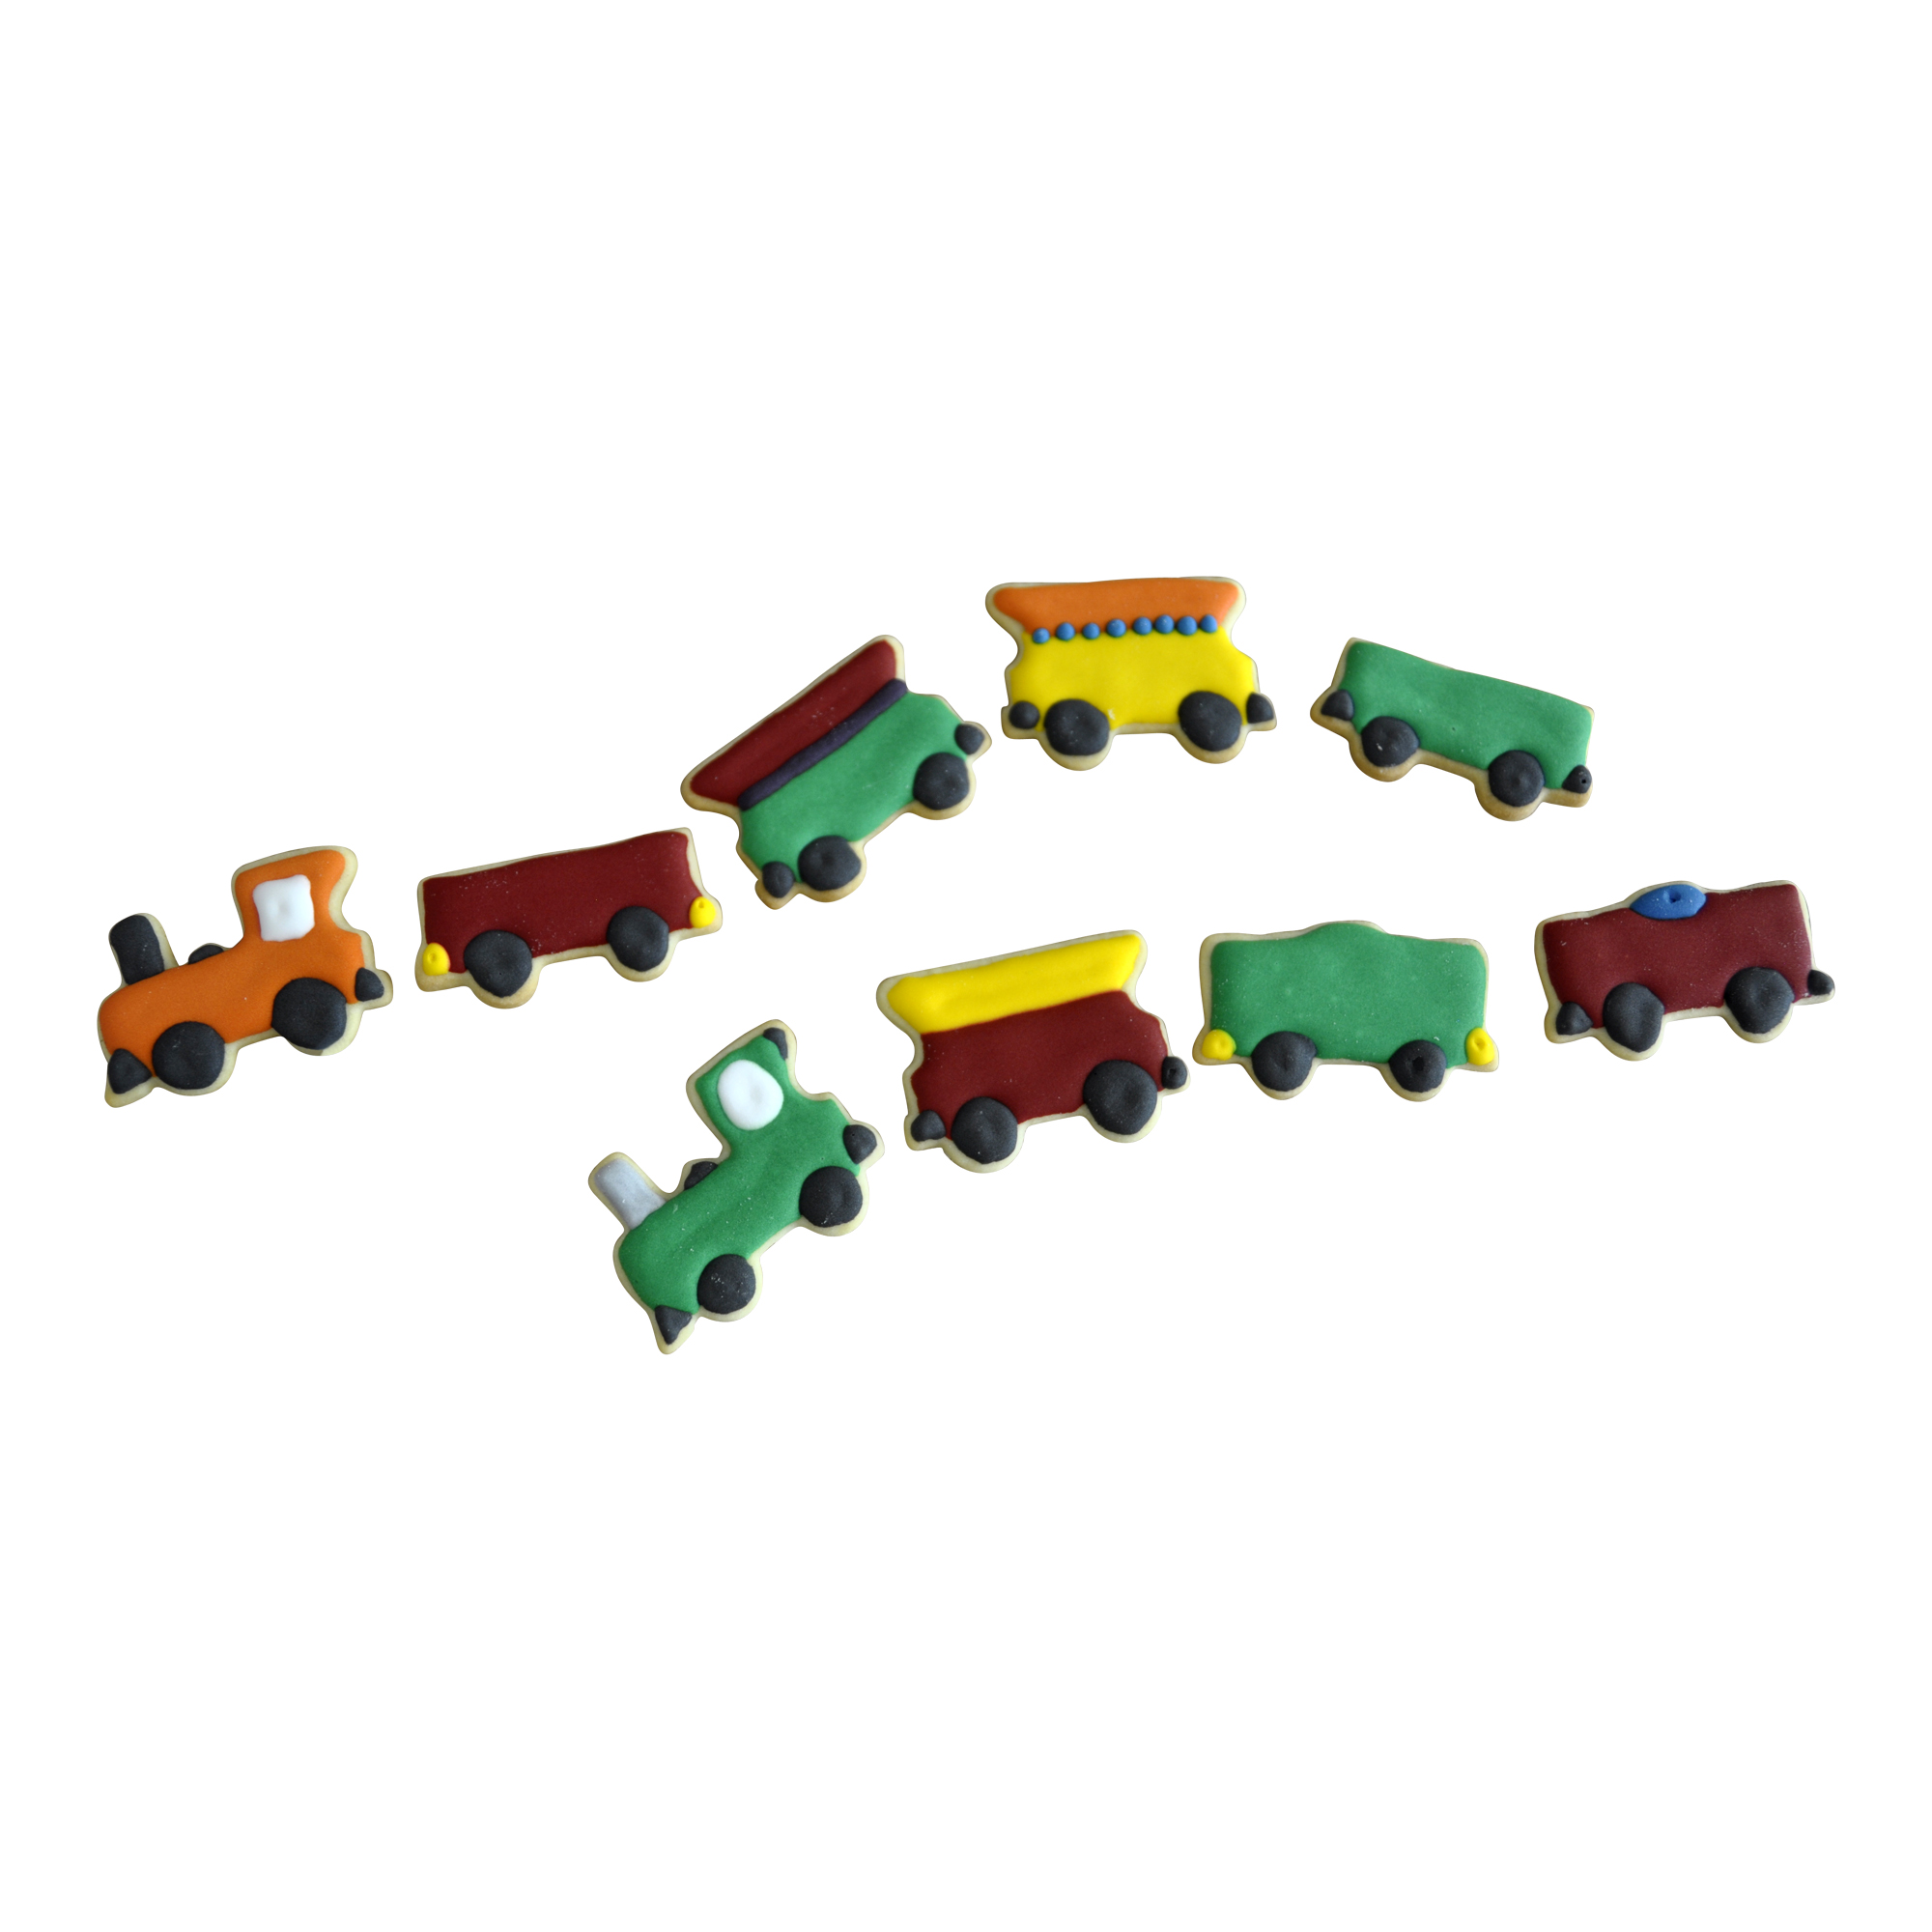 Set Lokomotive Güterwagen Personenwagen Ausstecher Ausstechform Zug Eisenbahn